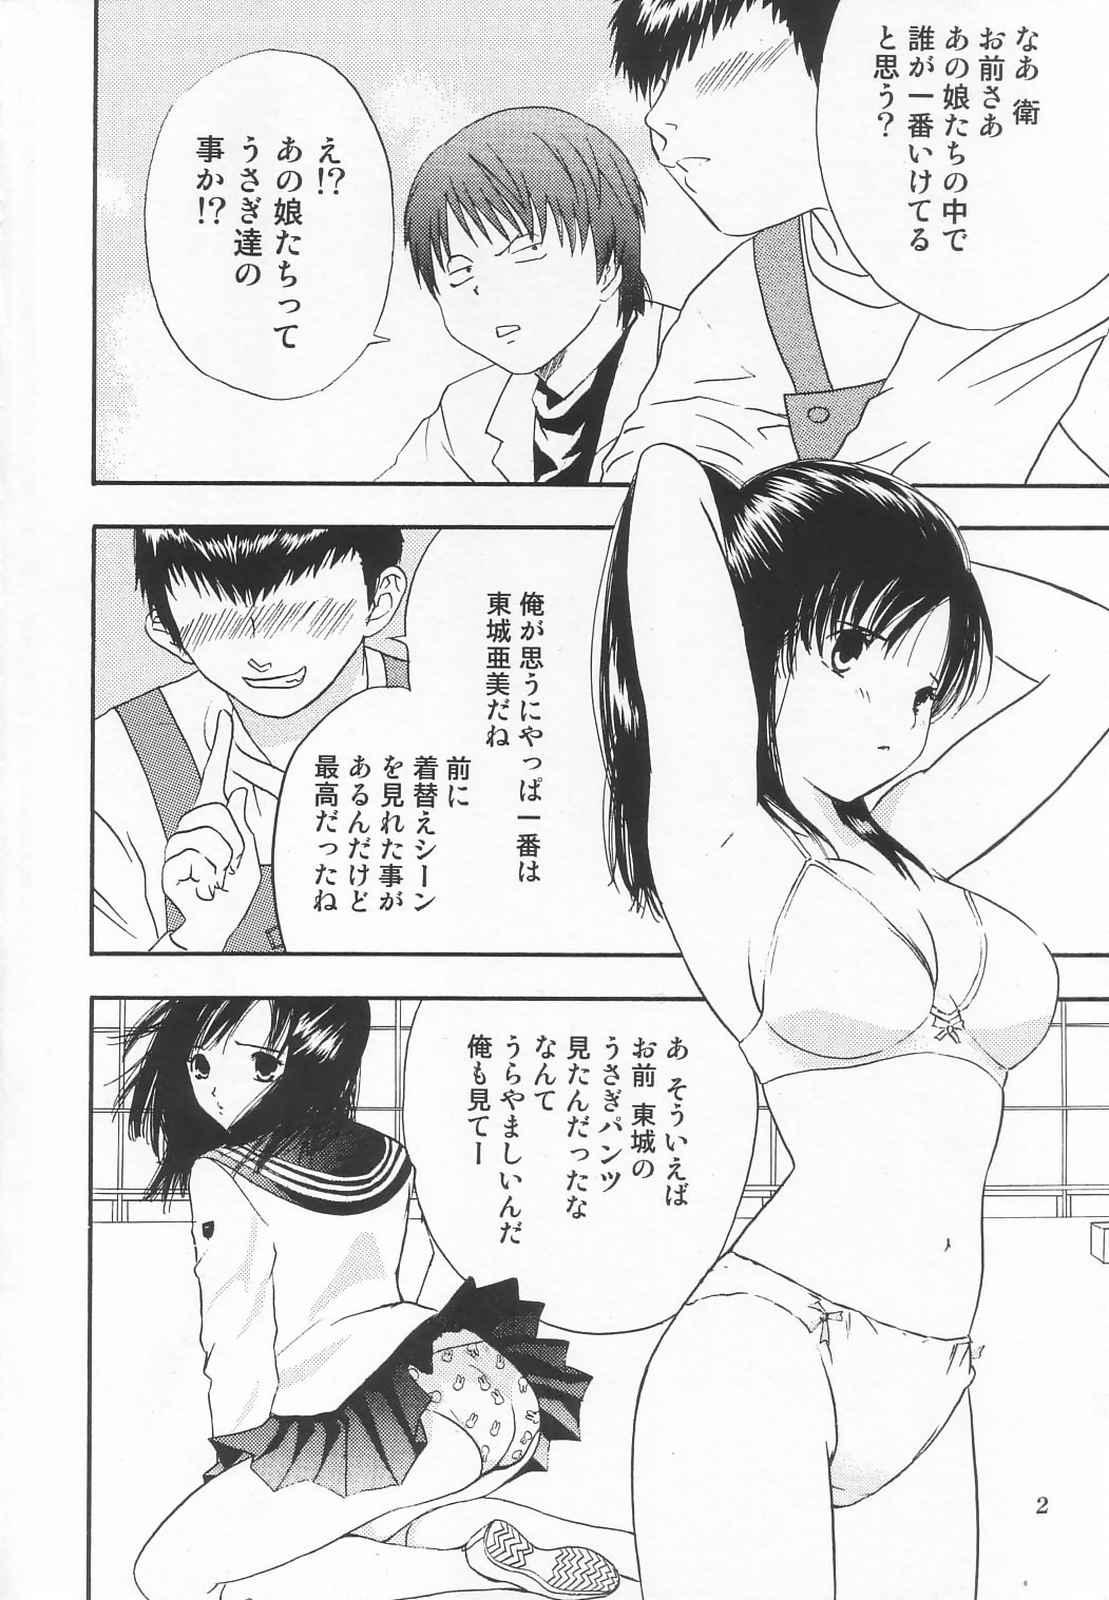 Ass Tokusatsu Magazine x 2003 Fuyu Gou - Sailor moon Ichigo 100 Costume - Page 4